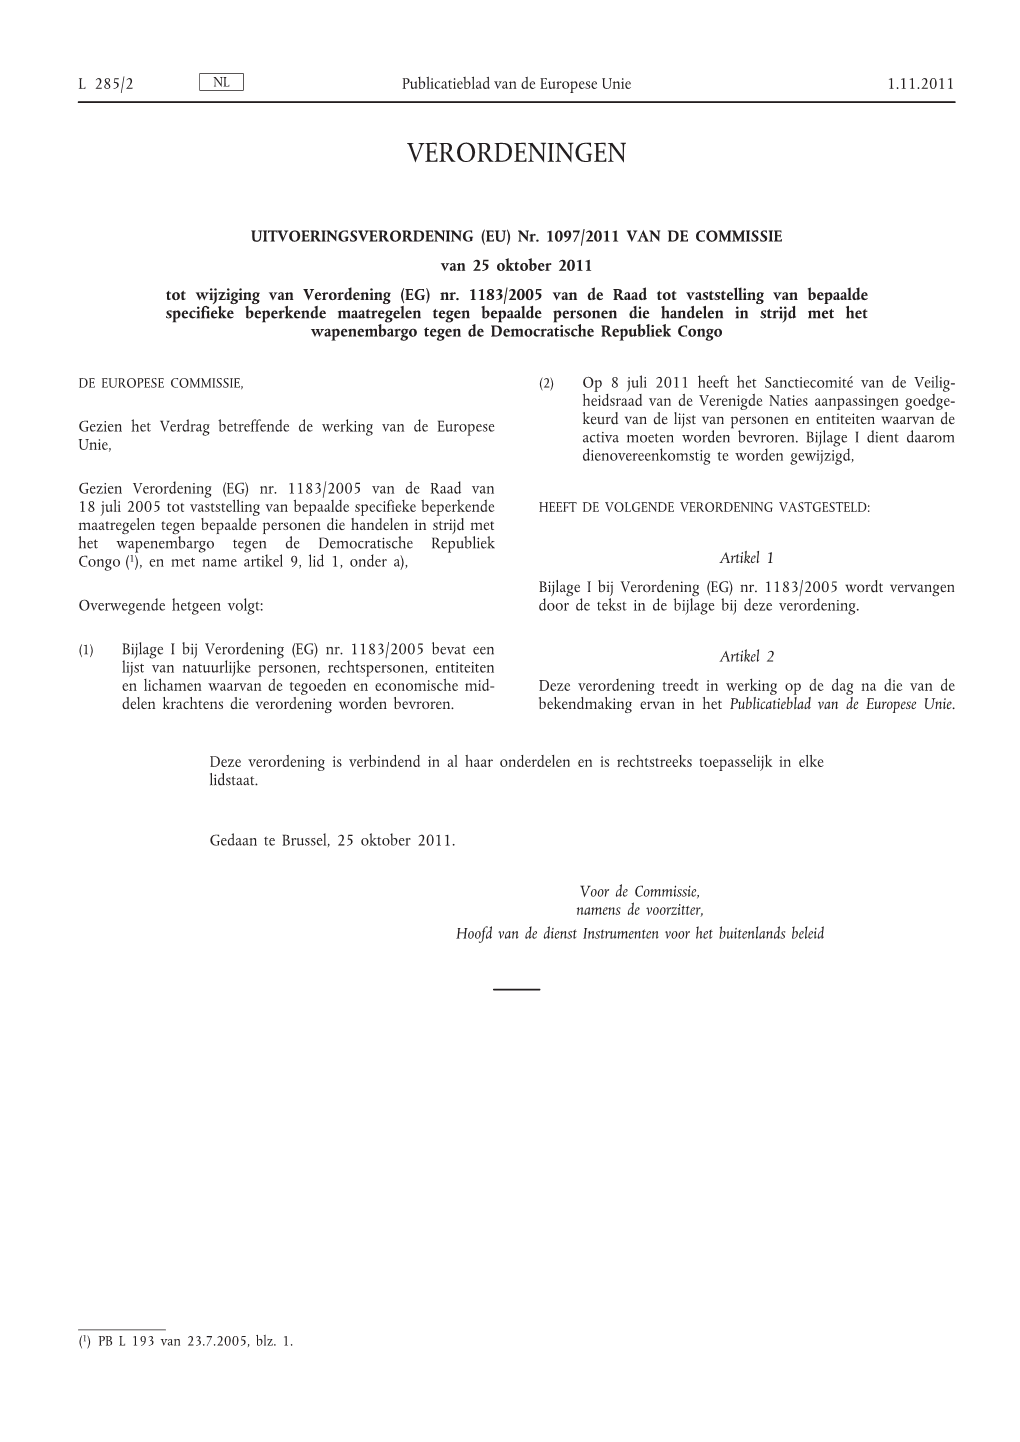 UITVOERINGSVERORDENING (EU) Nr. 1097/2011 VAN DE COMMISSIE Van 25 Oktober 2011 Tot Wijziging Van Verordening (EG) Nr